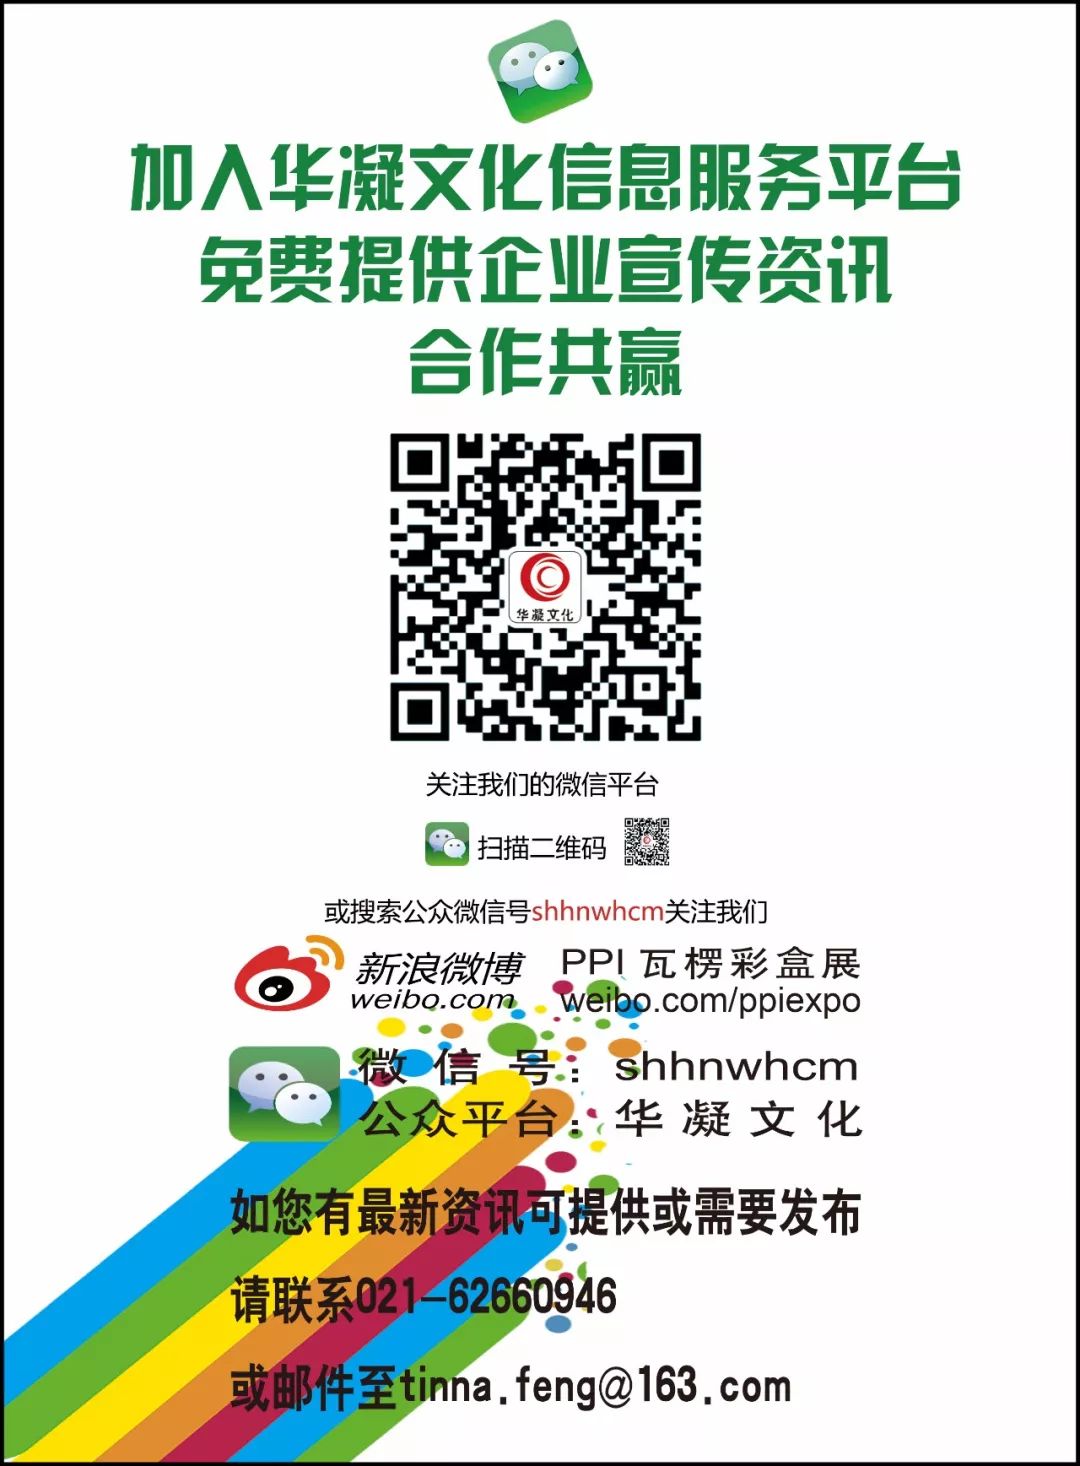 头条上海分公司_上海头条官方_上海市包装技术协会